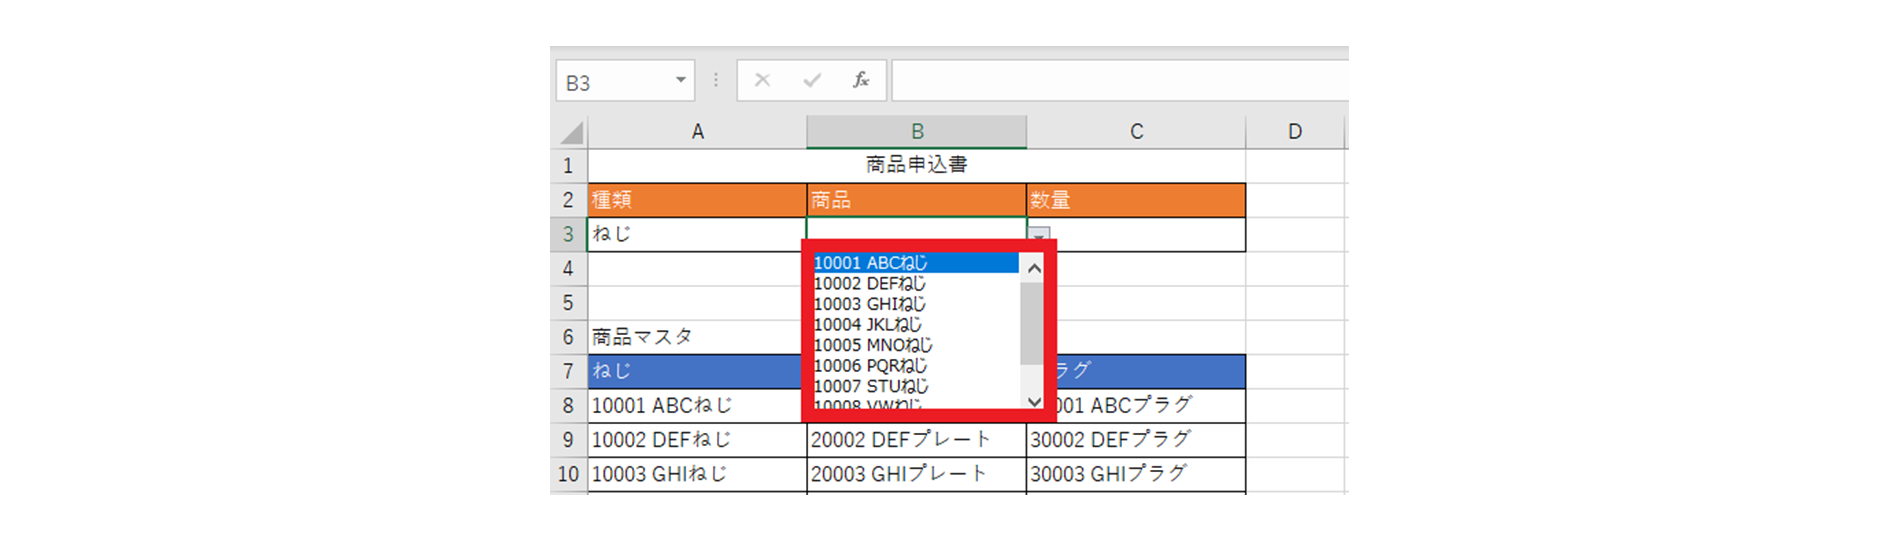 Excel ドロップダウン リストの使い方! プルダウン作成の基本〜応用 ...